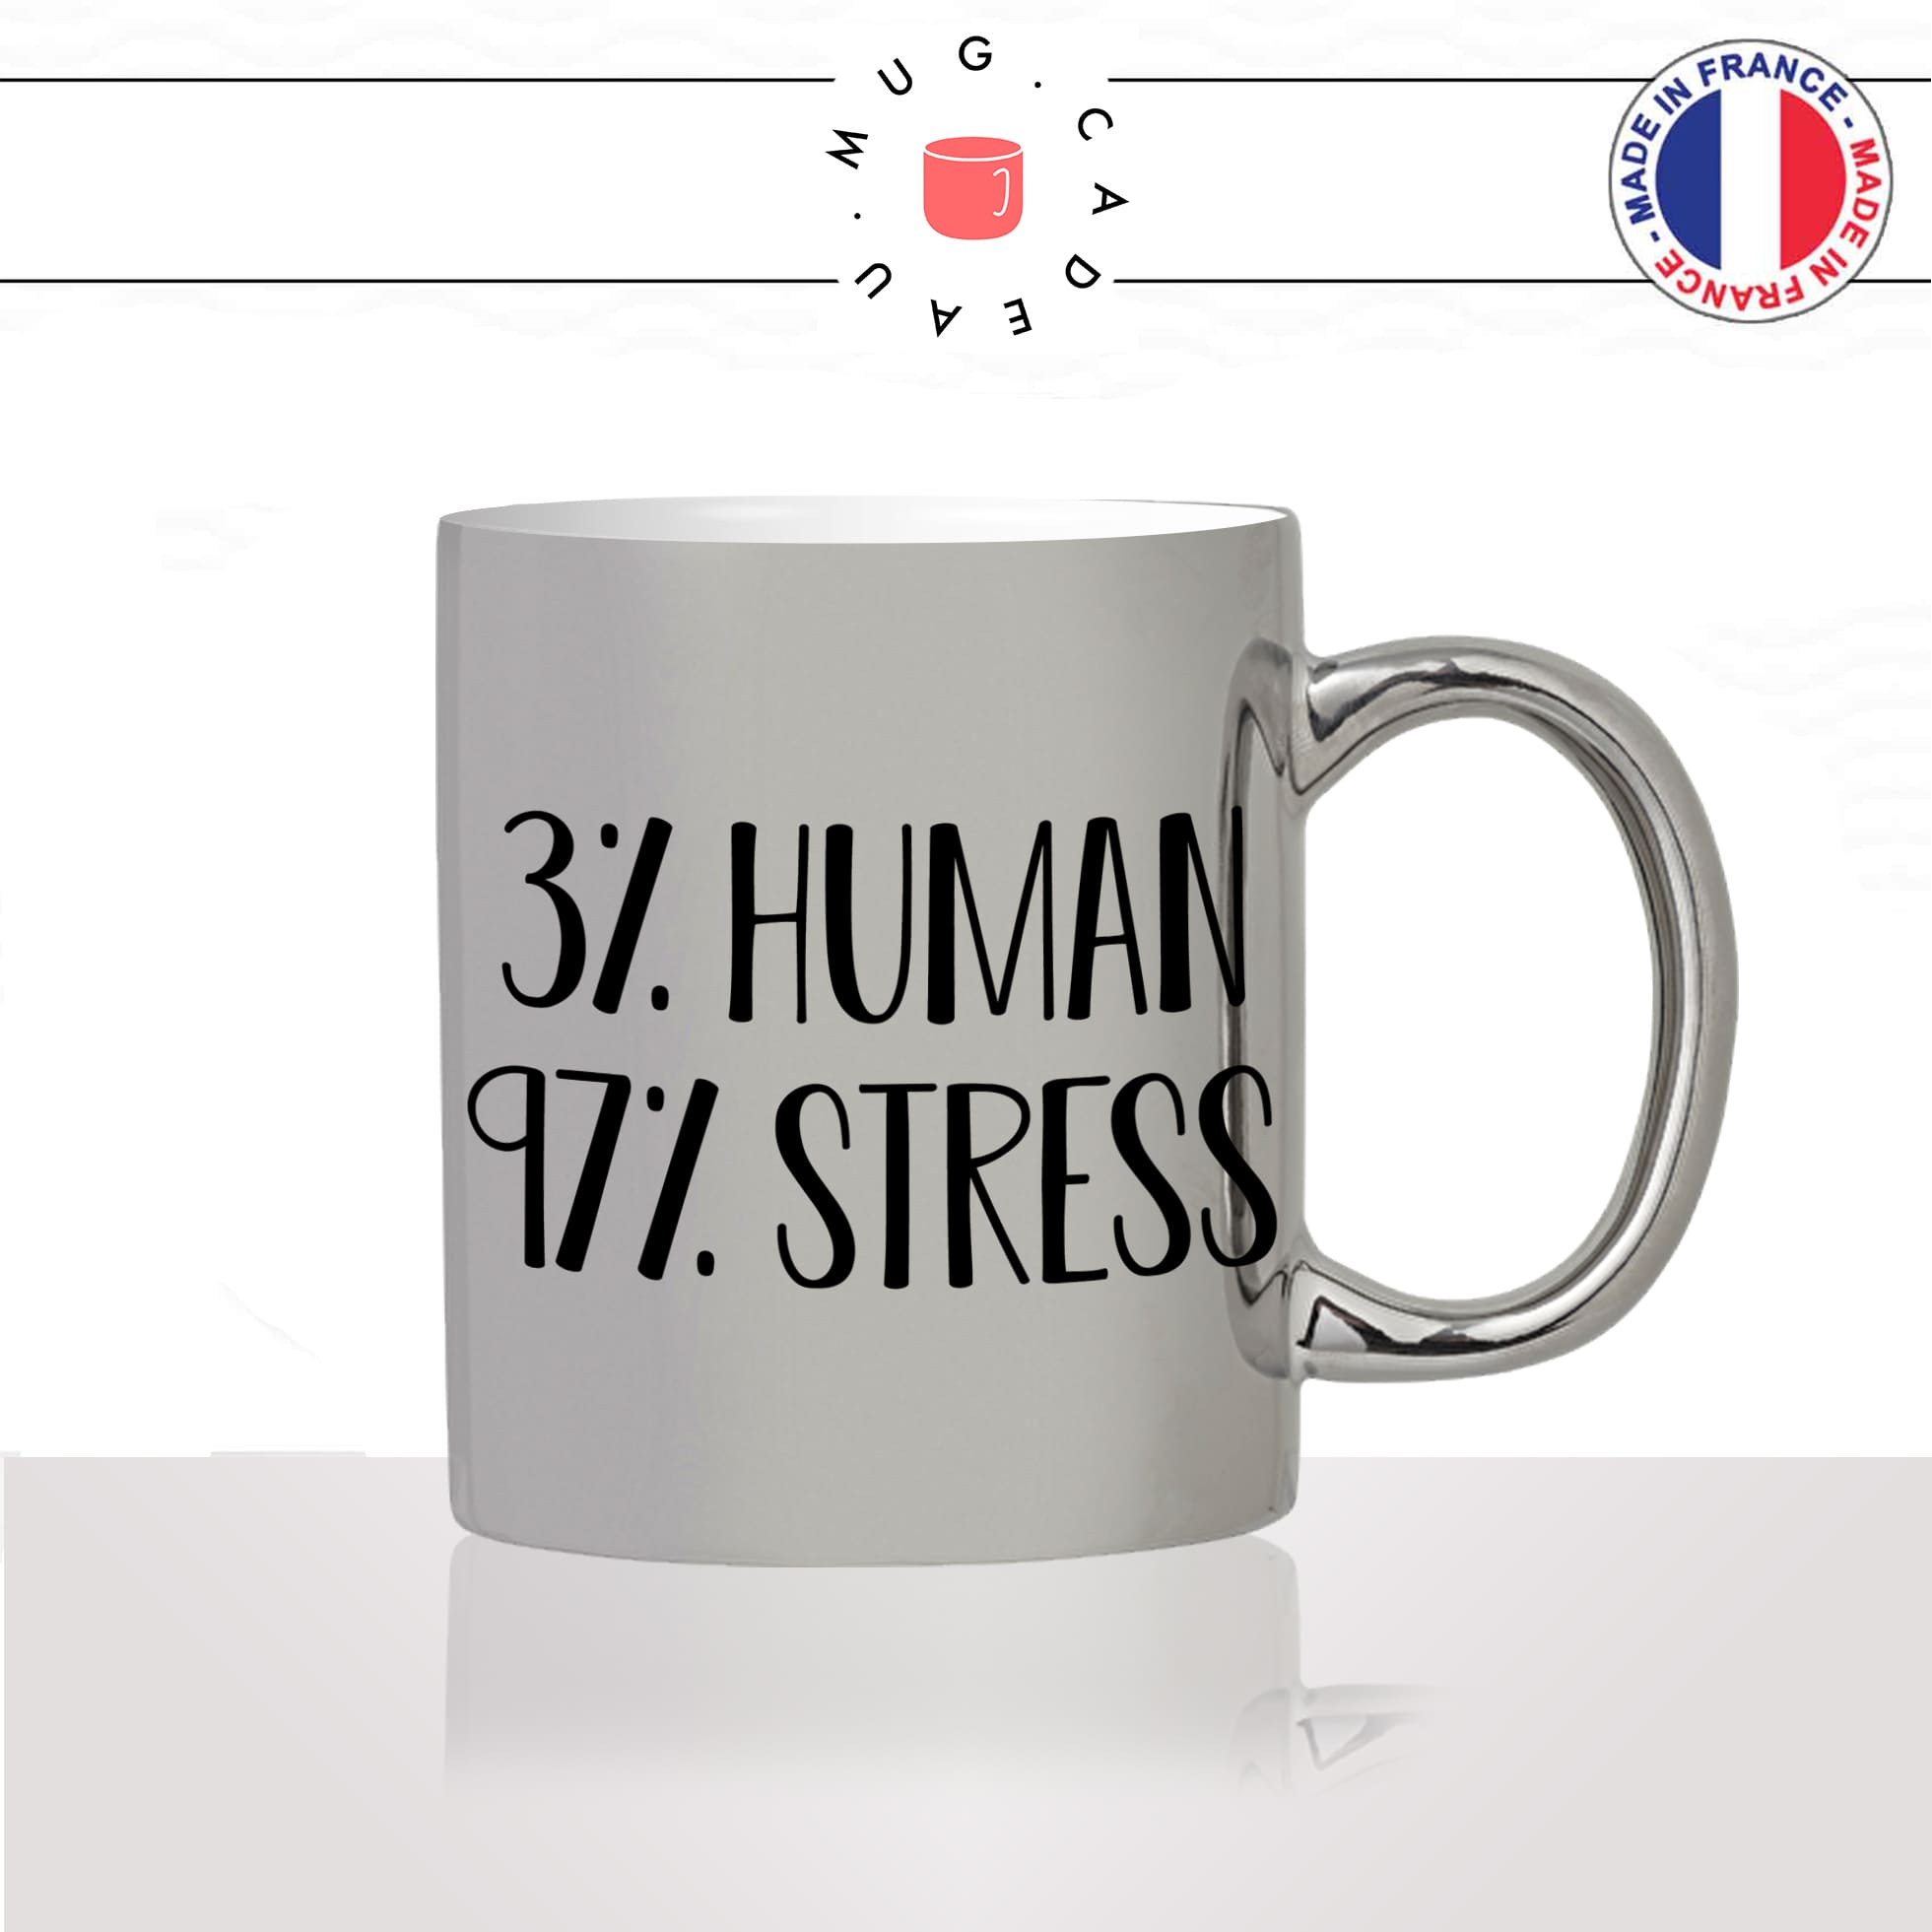 mug-tasse-argent-argenté-silver-human-stress-coffee-travail-collegue-amie-bureau-vacance-influenceur-humour-idée-cadeau-fun-cool-café-thé2